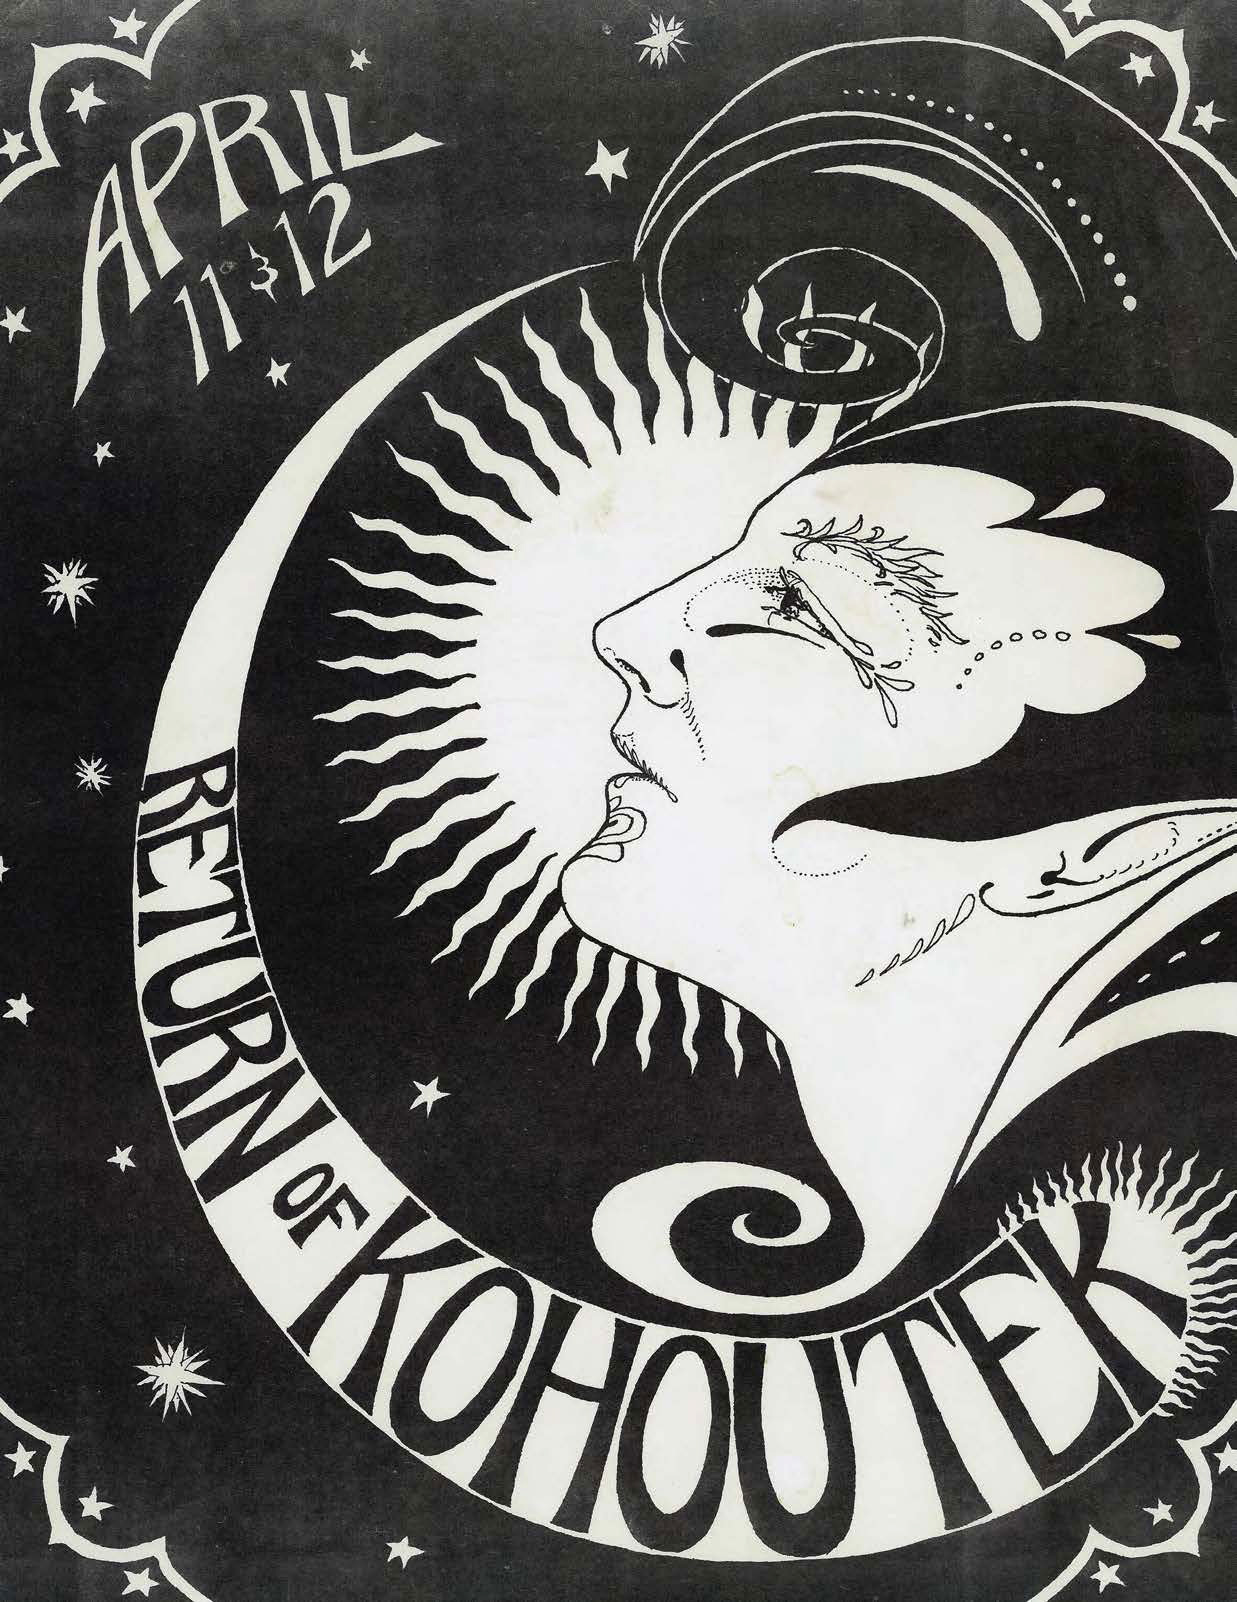 Poster - Return of Kohoutek, 1975